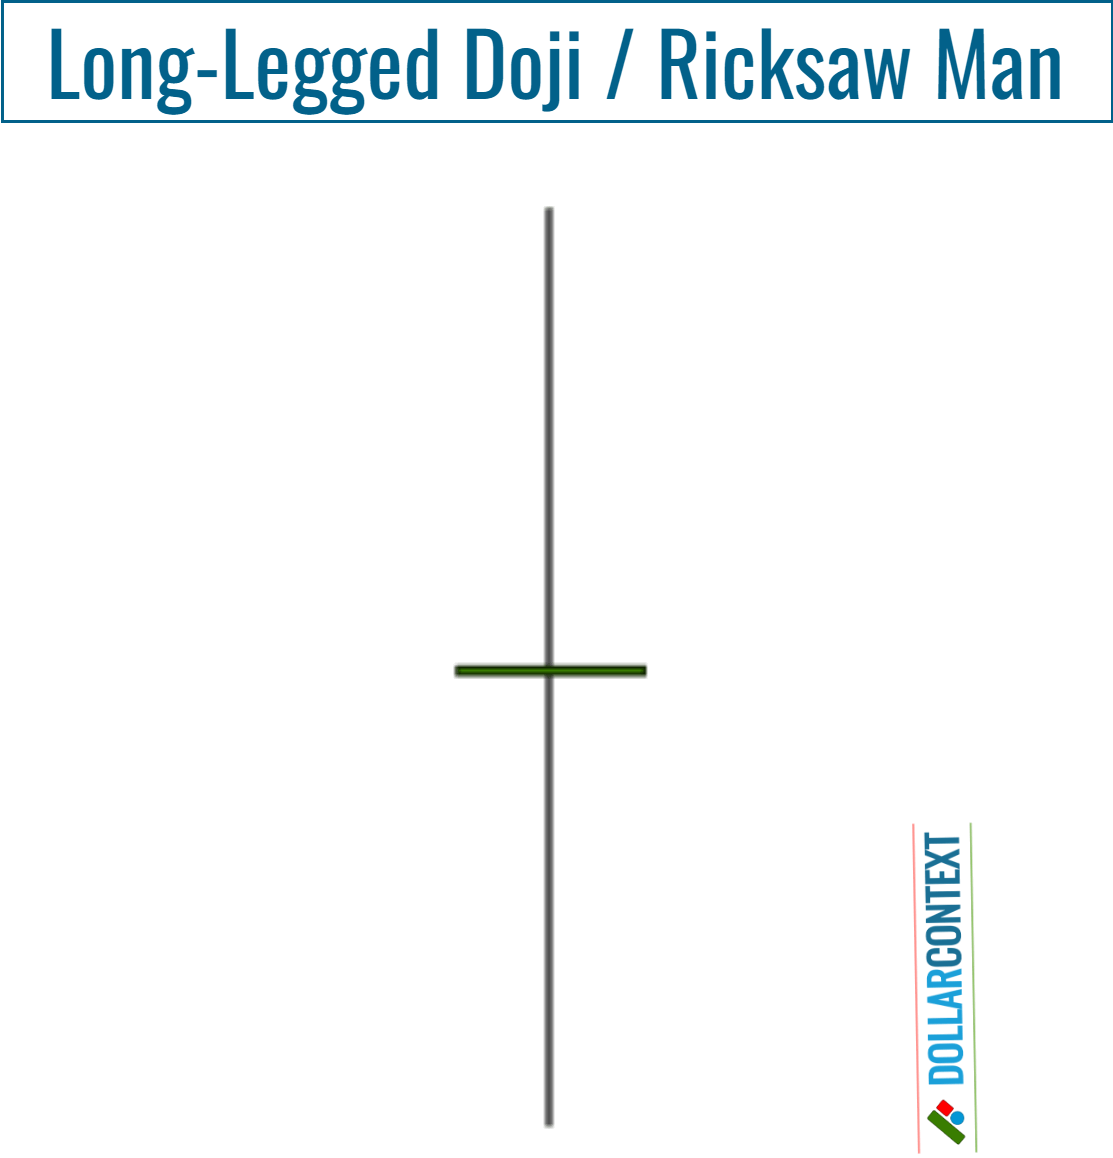 Long-Legged Doji and Rickshaw Man